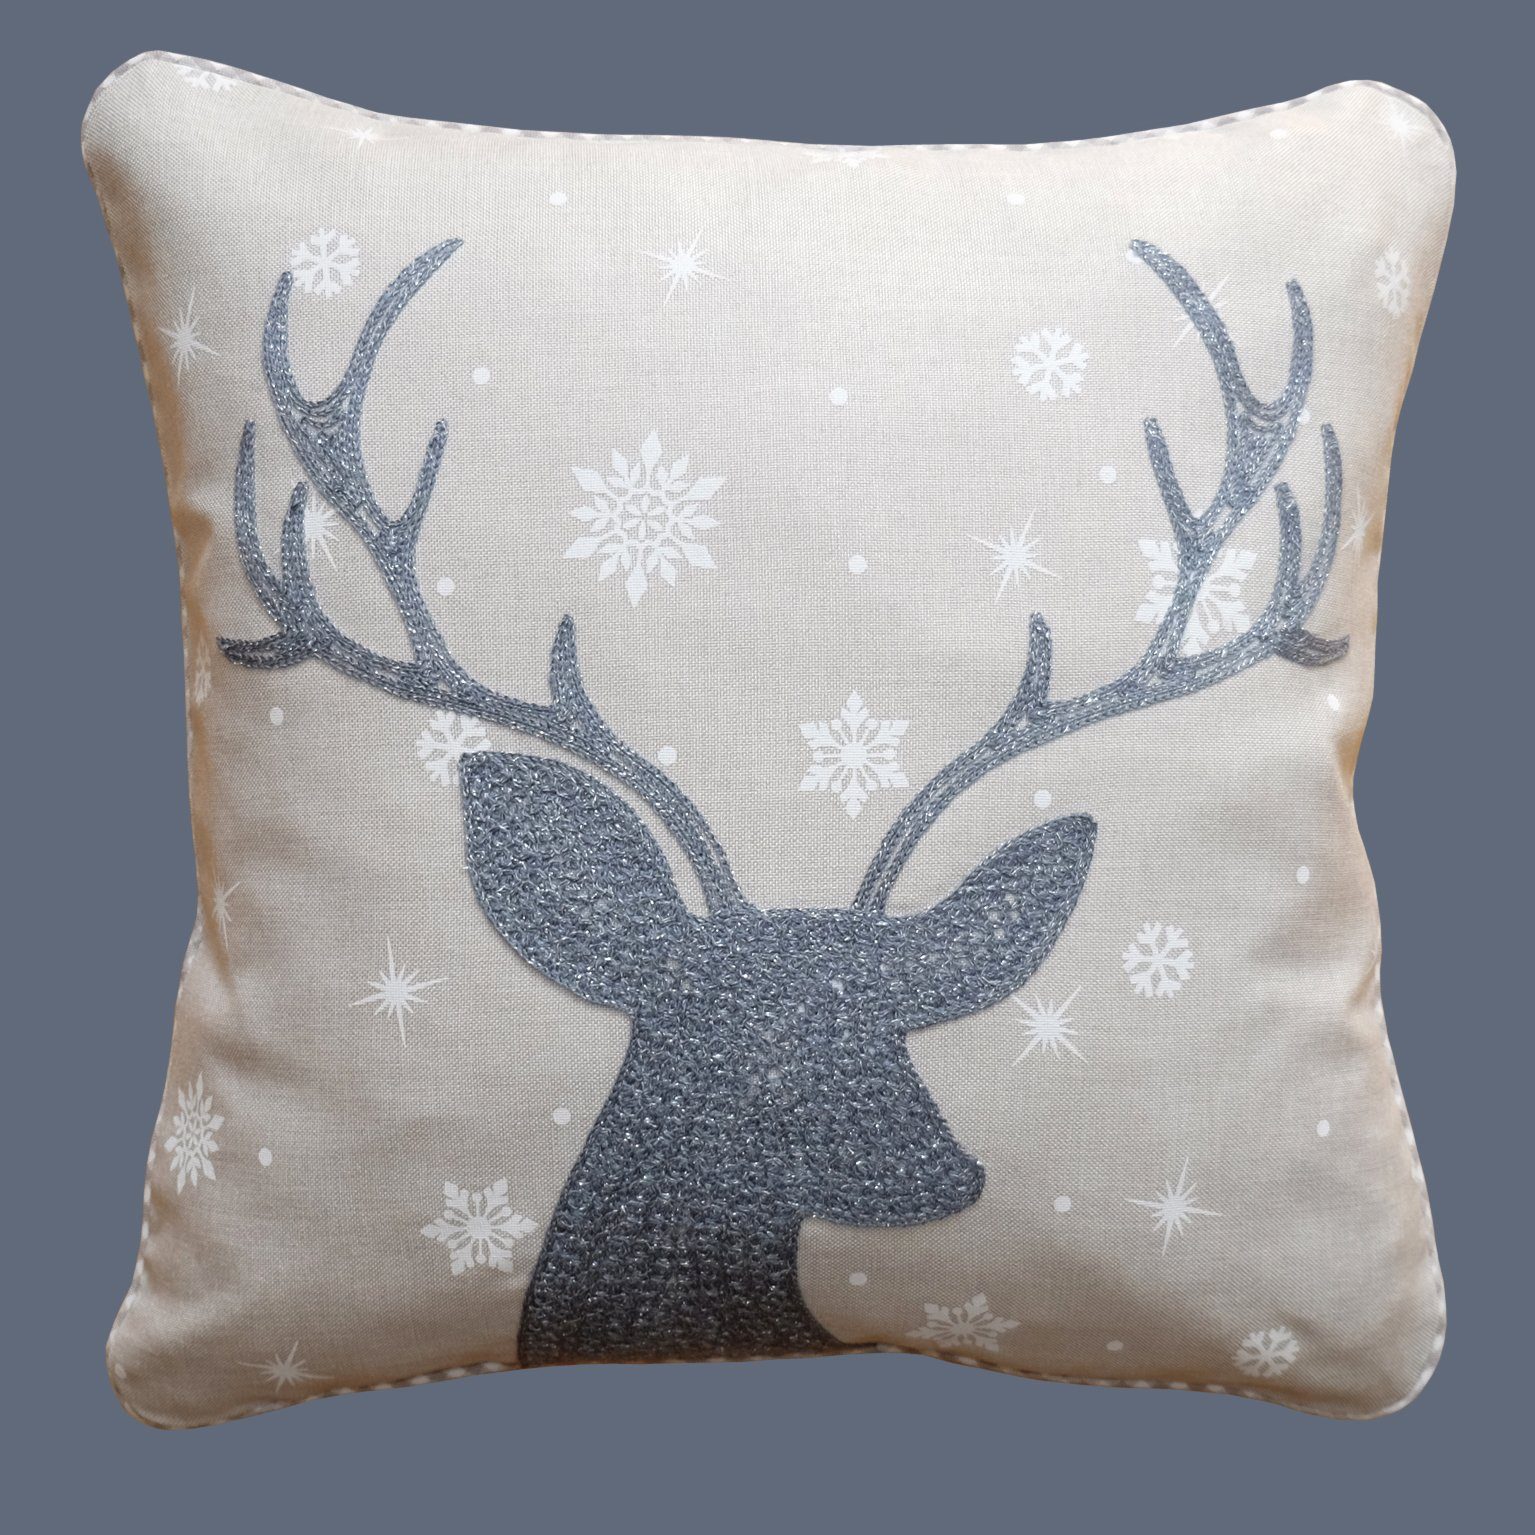 Kissenhülle mit verschiedenen Motiven Advent Weihnachten Winter, TextilDepot24, mit Reißverschluss silber